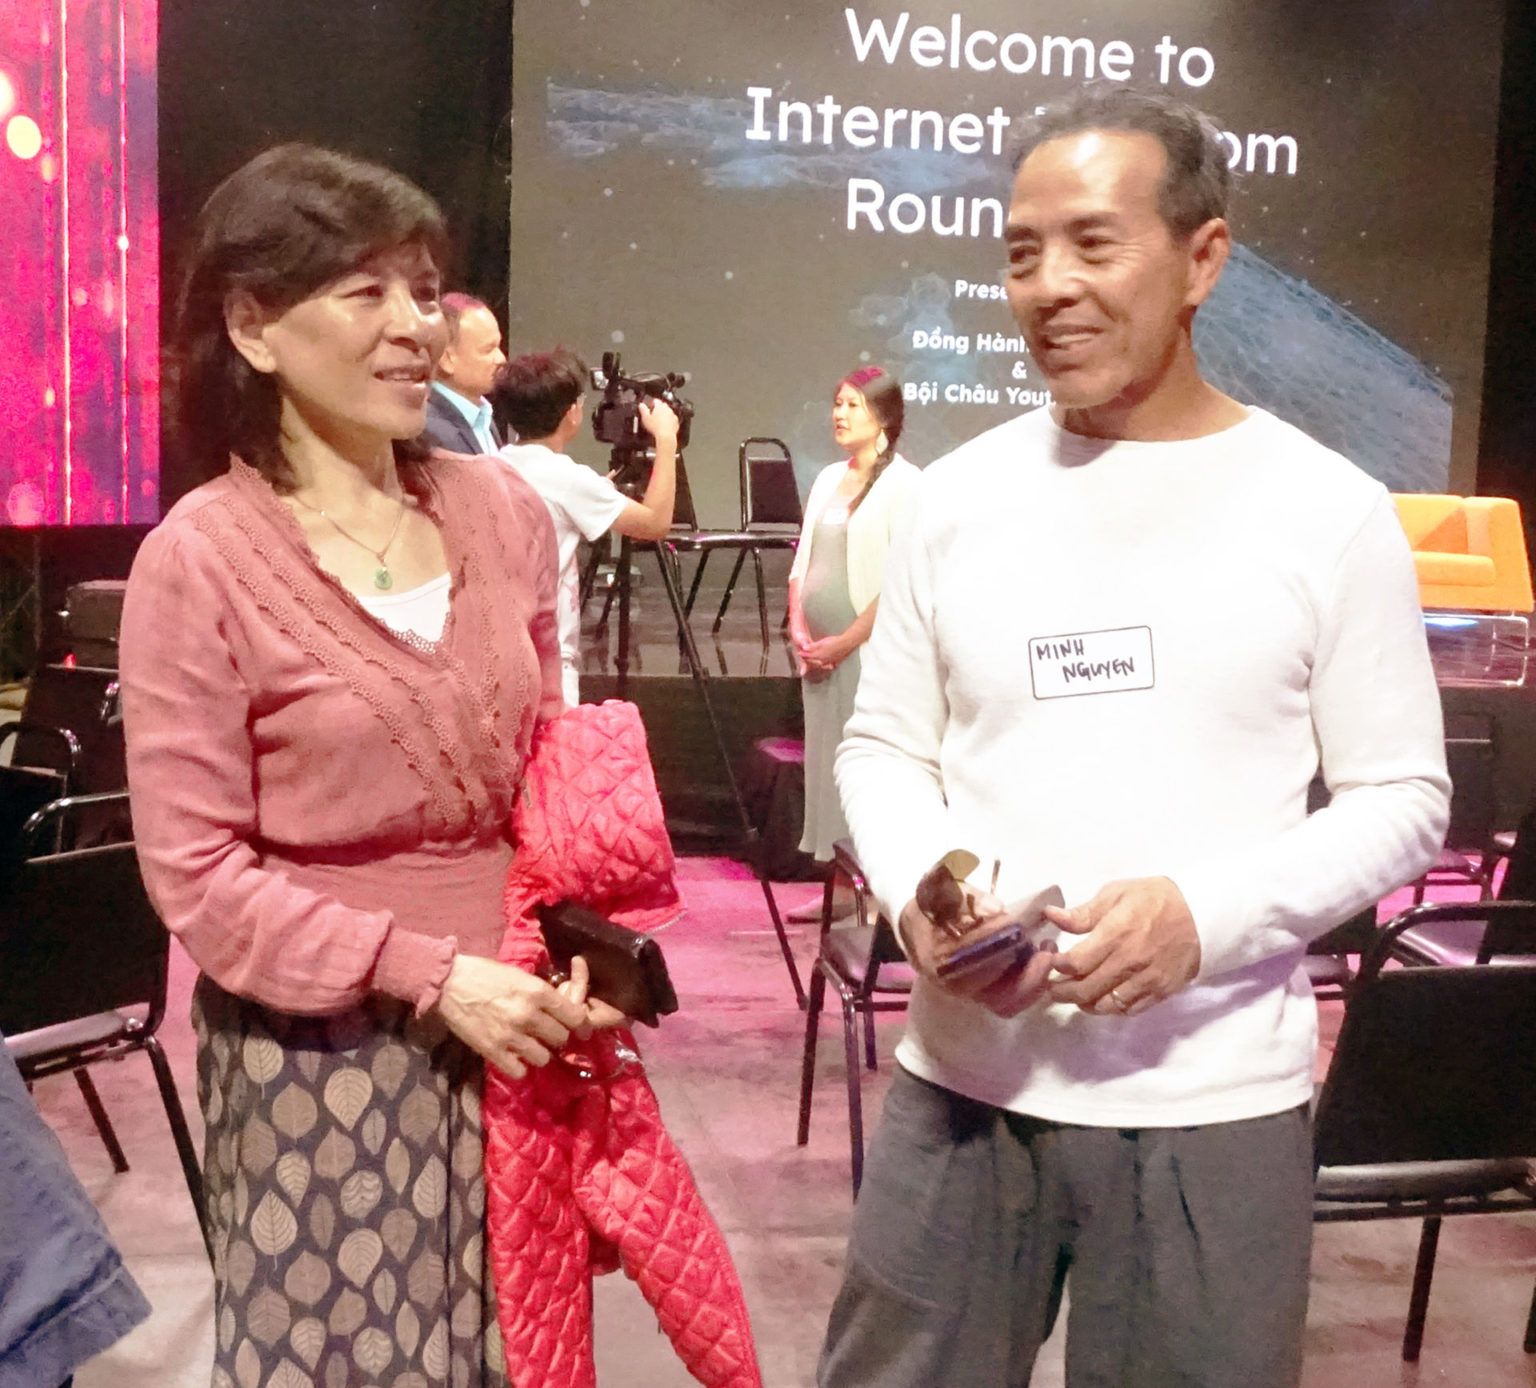 Vợ chồng ông Minh Nguyễn tham dự hội thảo “Tự Do Internet tại Việt Nam” tổ chức tại đài truyền hình SBTN, Garden Grove. Ảnh: Lâm Hoài Thạch/Người Việt